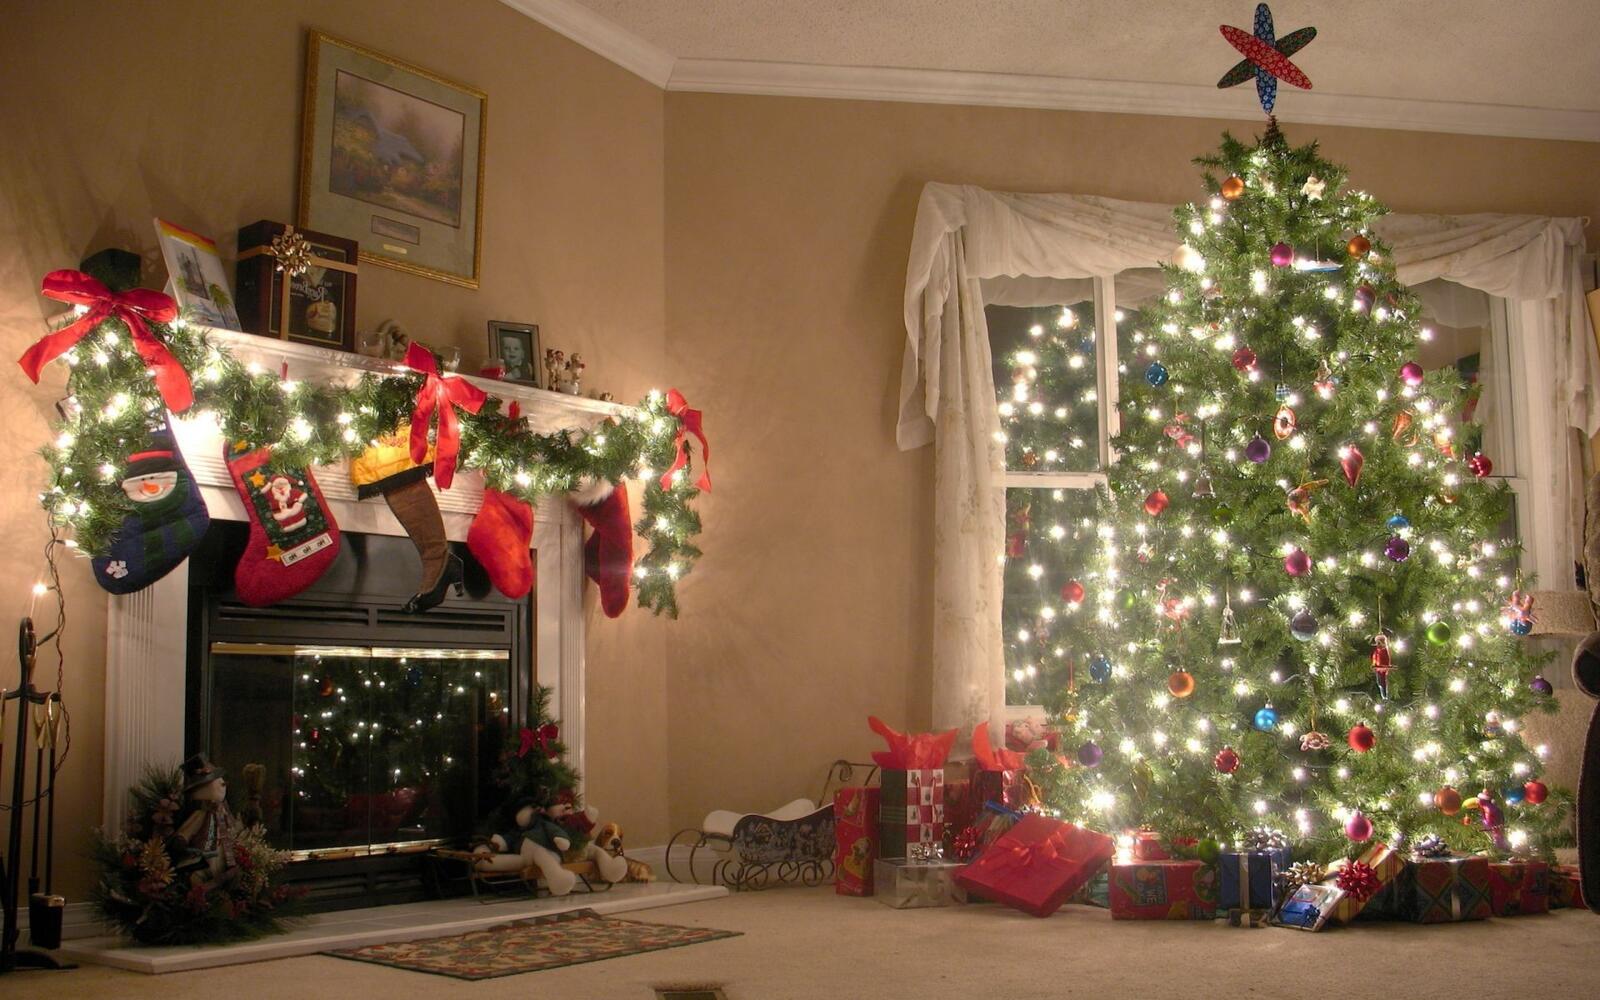 免费照片壁炉旁的大圣诞树